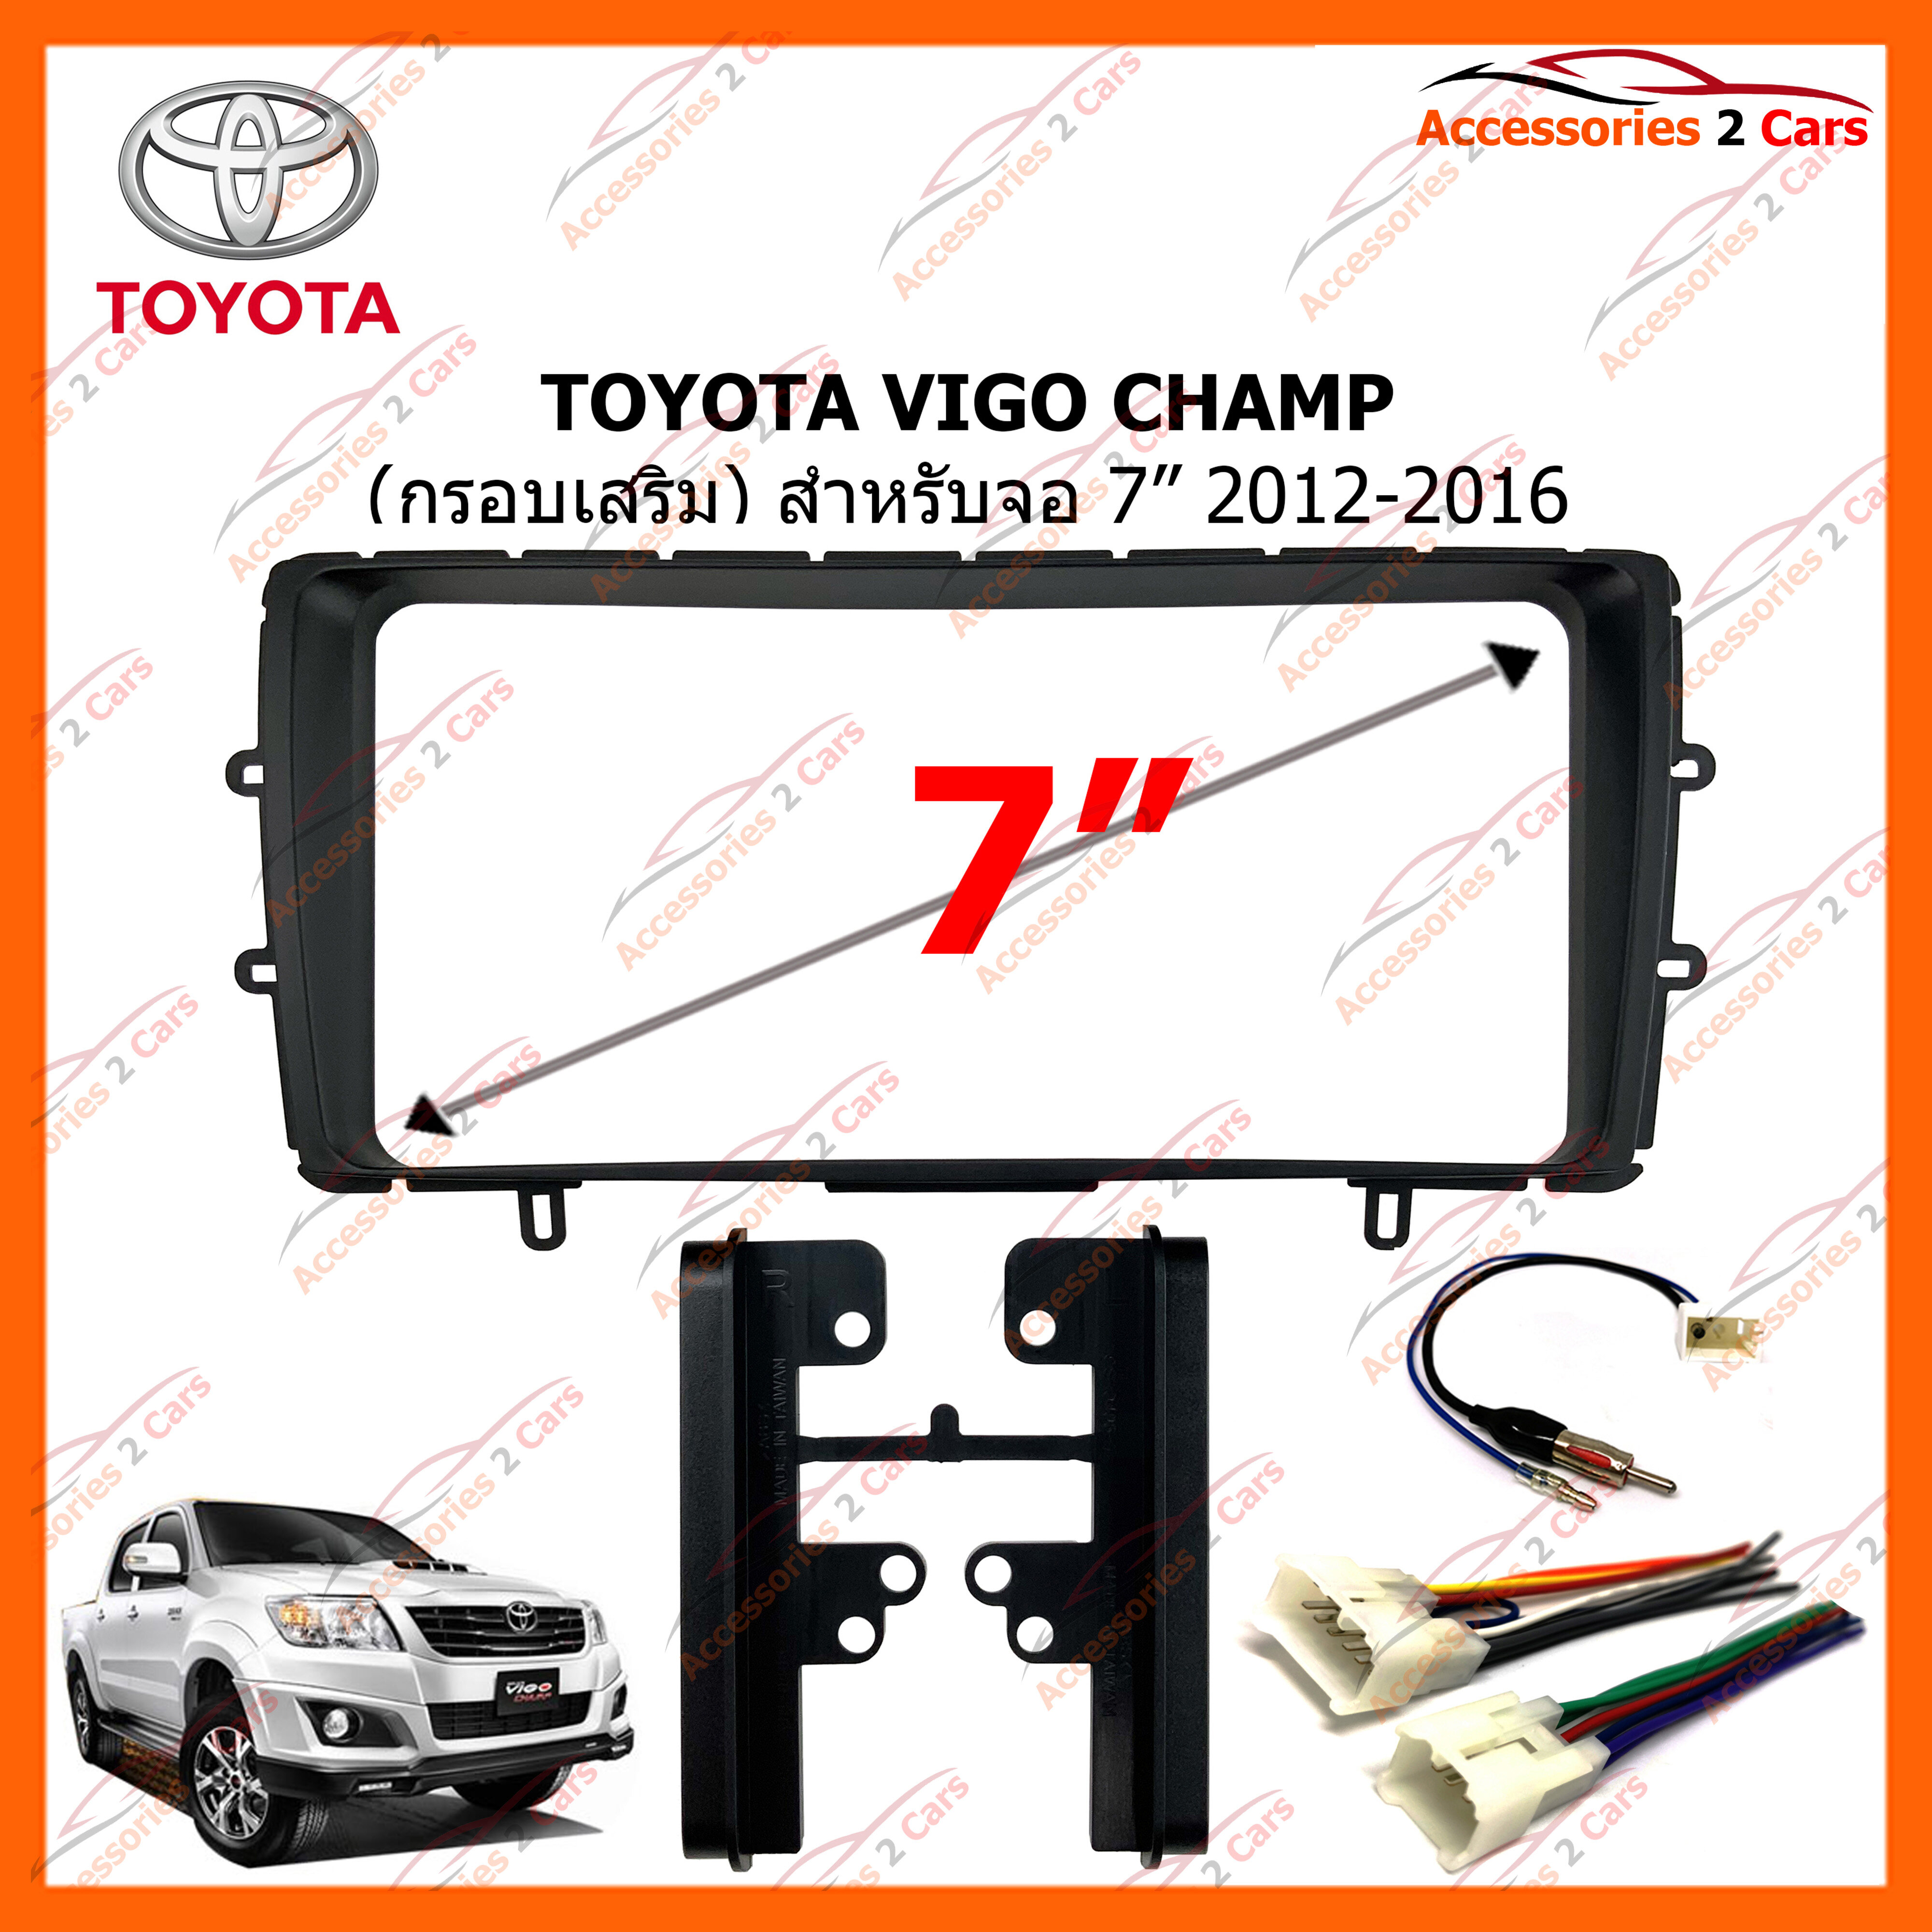 หน้ากากวิทยุรถยนต์ TOYOTA VIGO CHAMP (กรอบเสริม) 2012-2016 (TA-2201T)